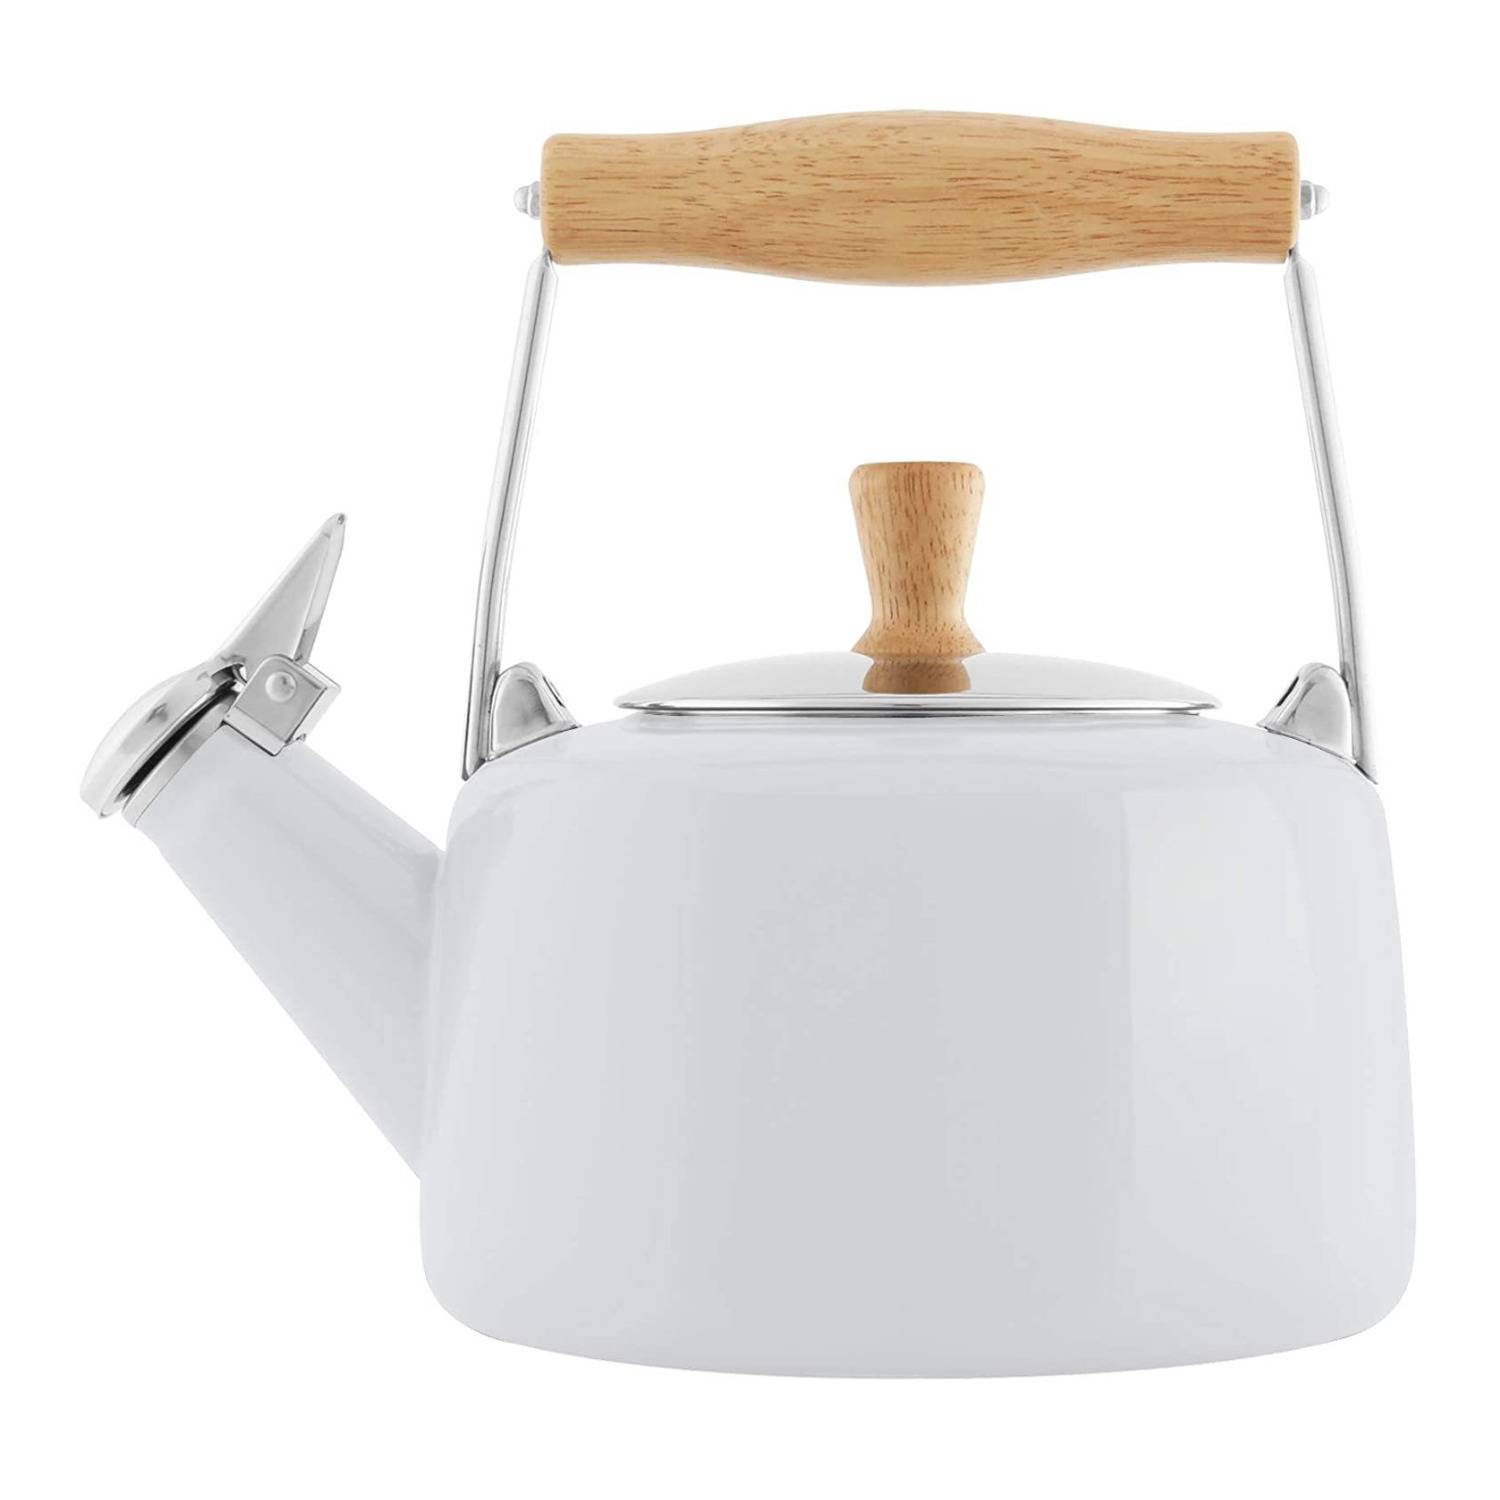 Chantal 1.4-Quart Enamel-on-Steel Sven Tea kettle (Glossy White)